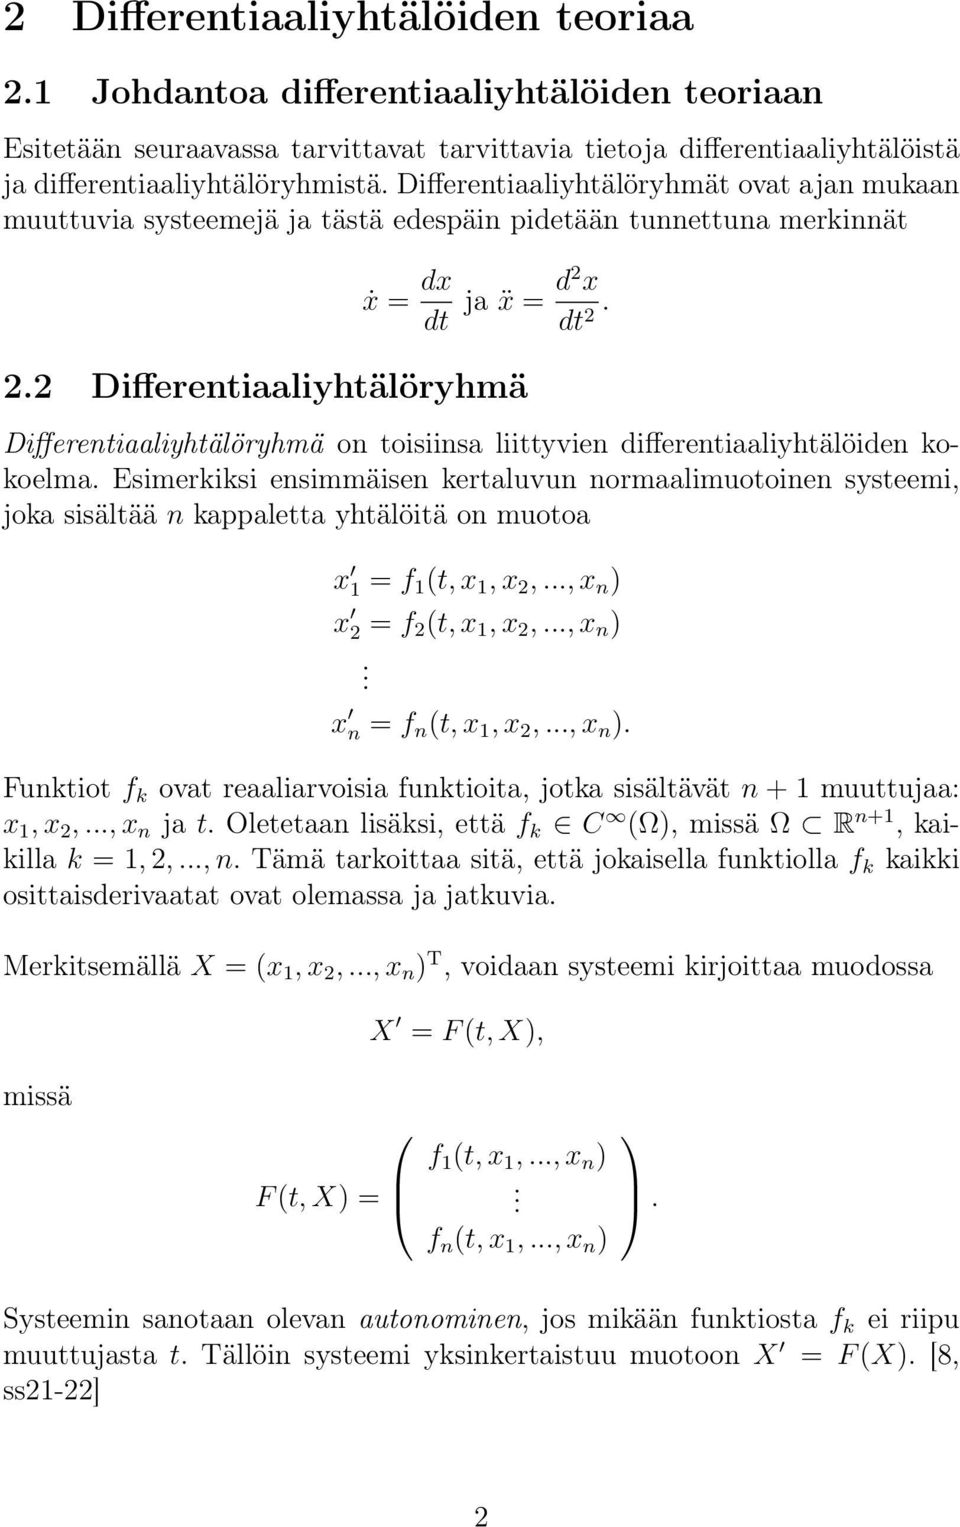 2.2 Differentiaaliyhtälöryhmä Differentiaaliyhtälöryhmä on toisiinsa liittyvien differentiaaliyhtälöiden kokoelma.